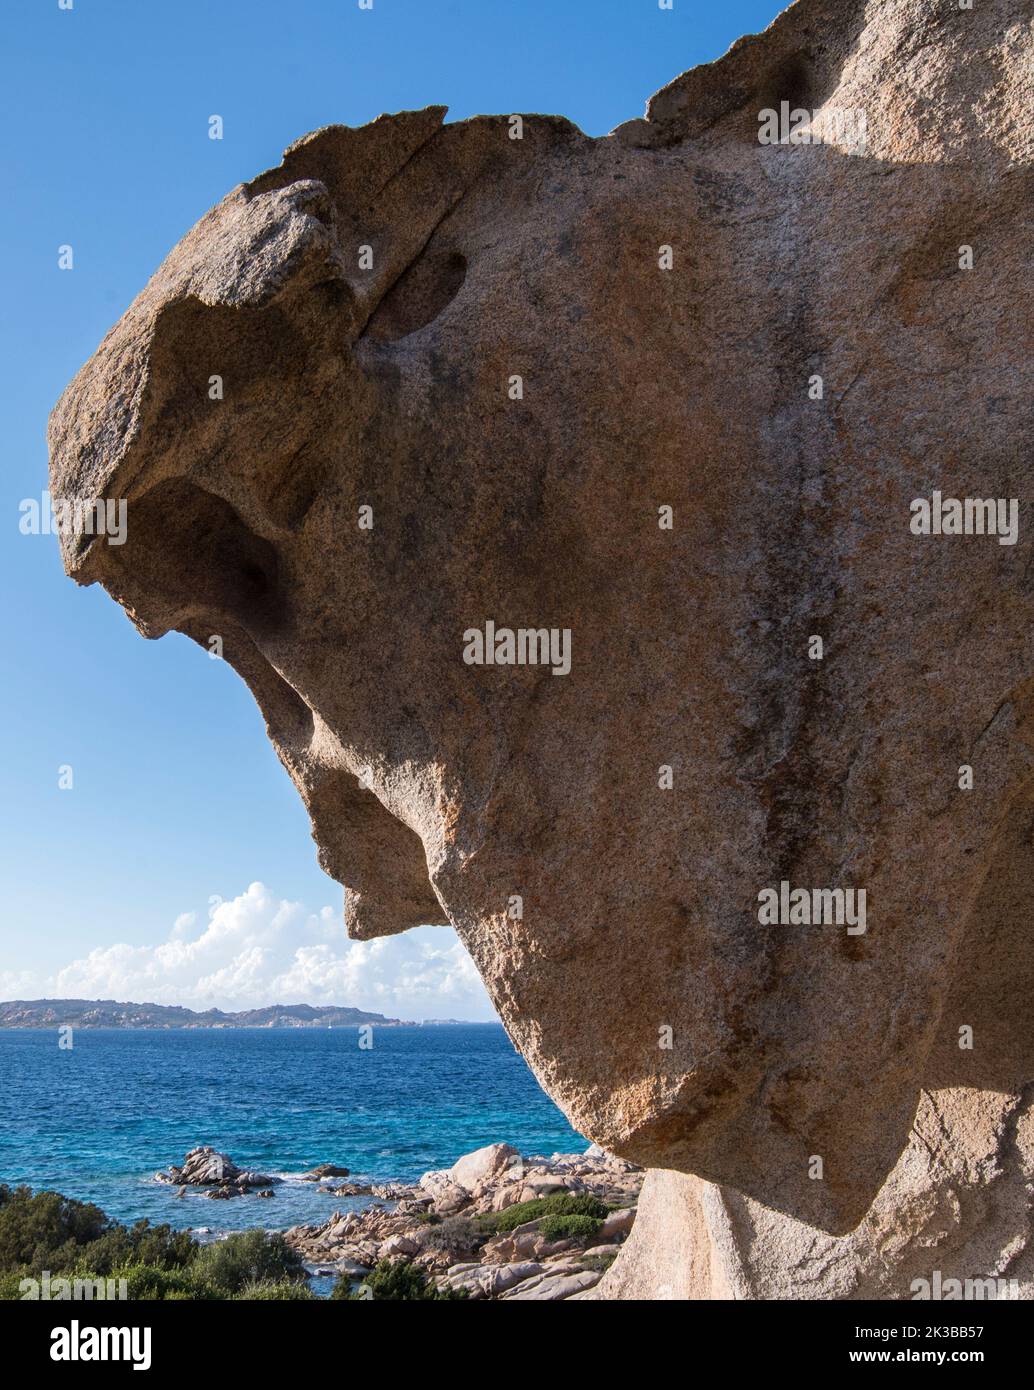 Costa selvaggia della Sardegna, isola Caprera Stock Photo